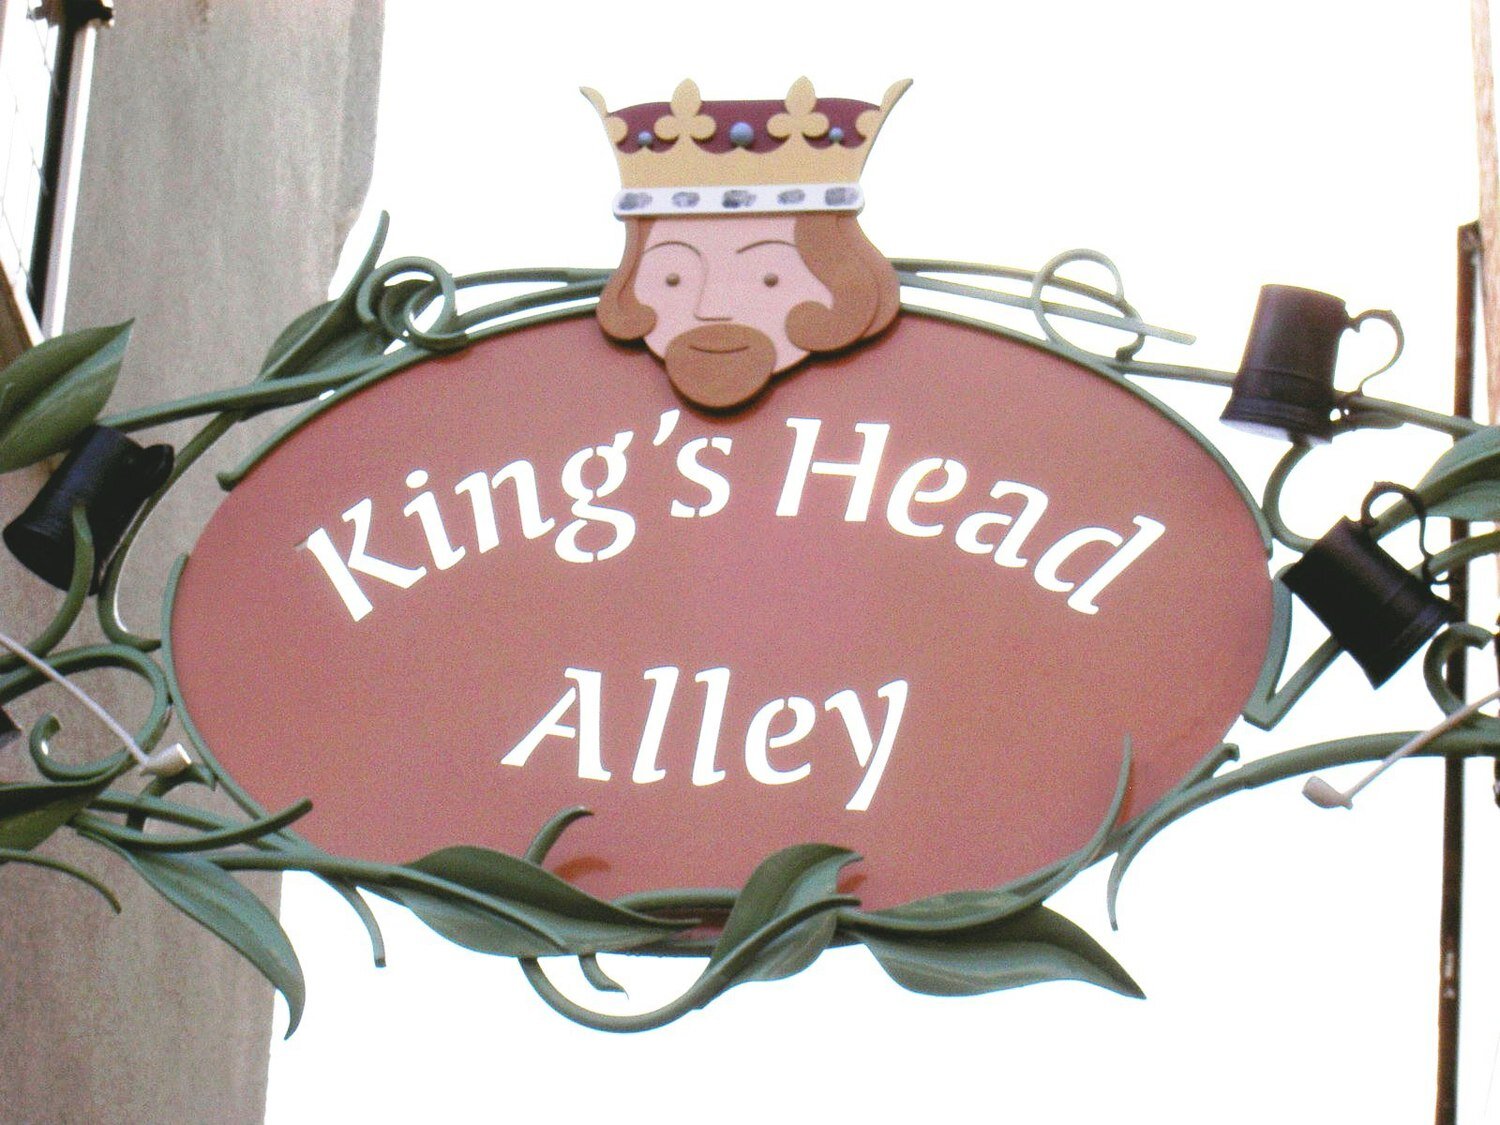 King's+head+Alley.jpg